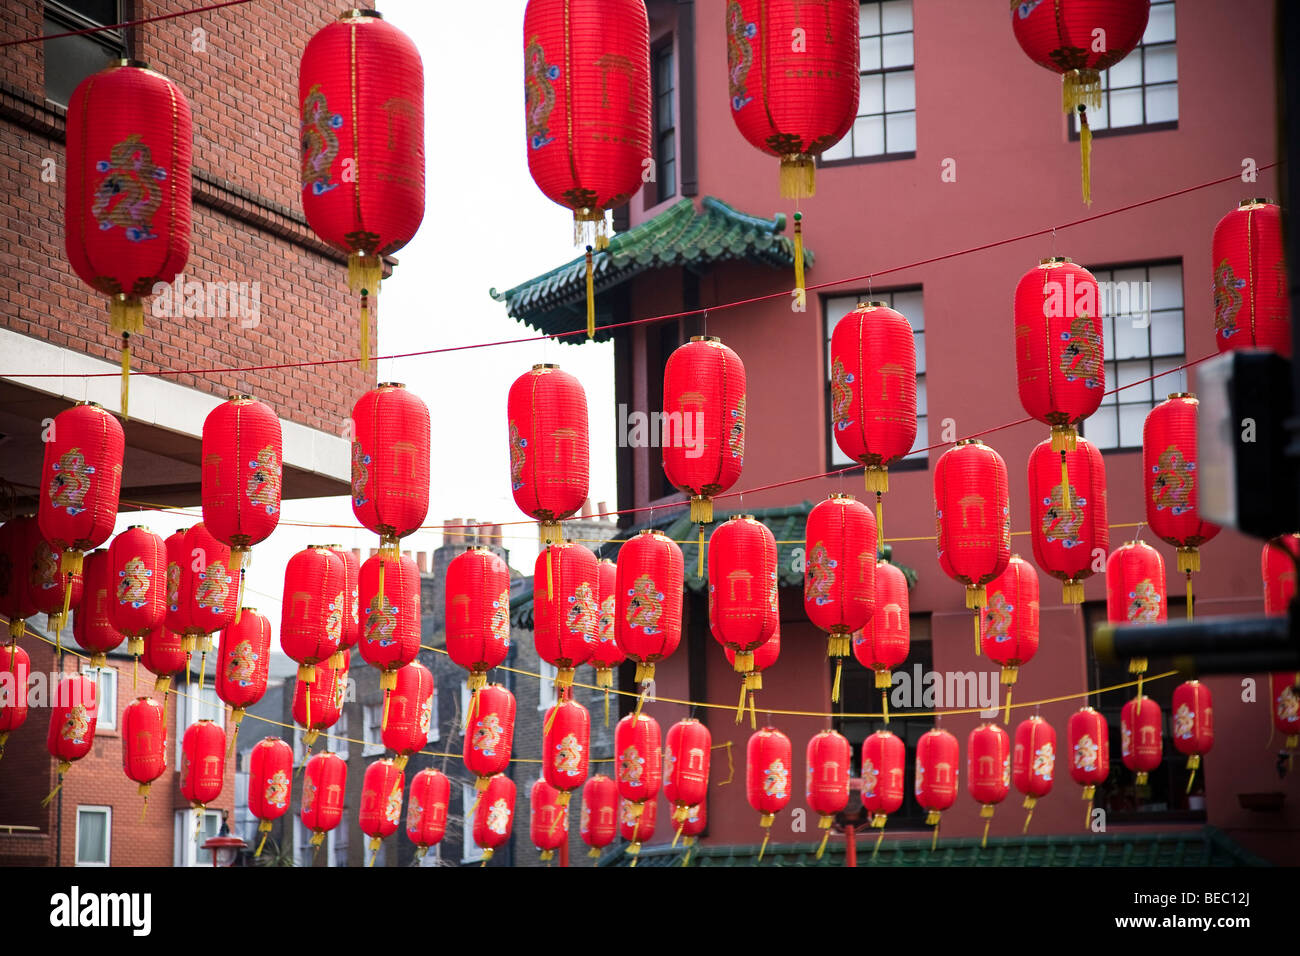 Lanternes rouges pour célébrer le Nouvel An chinois dans Gerrard lieu à Londres, Angleterre, Royaume-Uni Banque D'Images